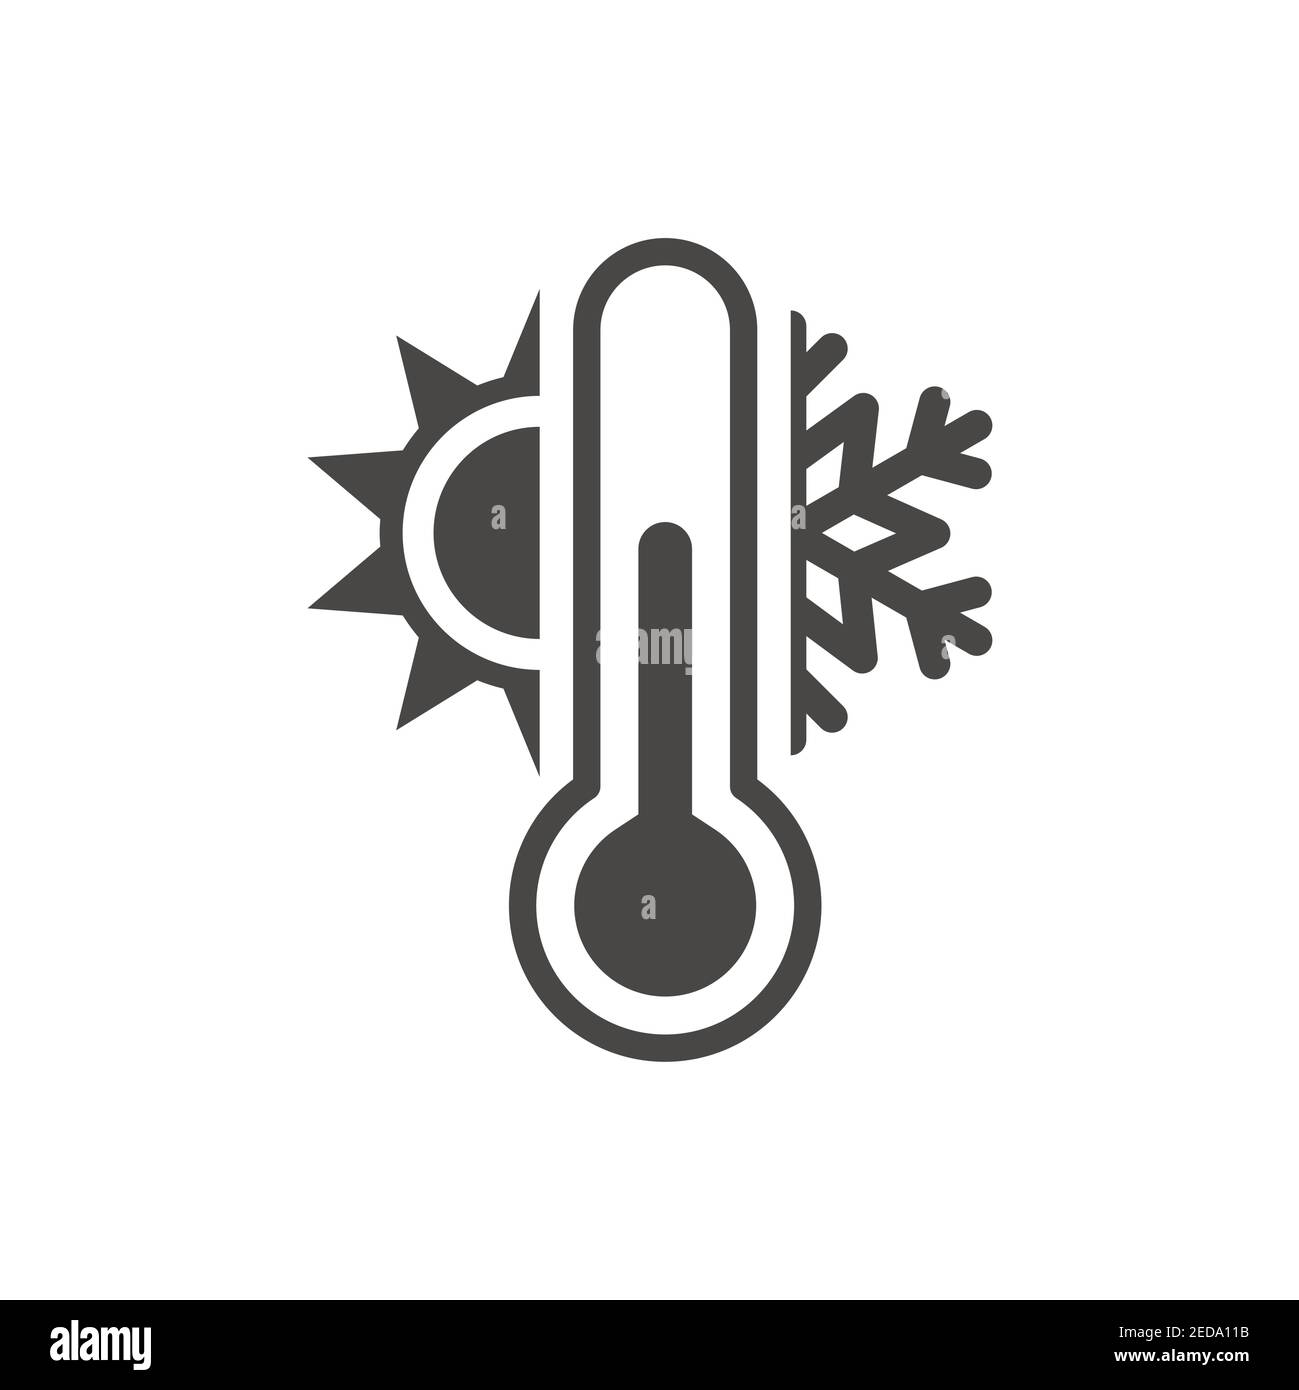 Thermometer mit Sonnen- und Schneeflocken-Symbol. Vektor Wetter oder Meteorologie Symbol. Stock Vektor